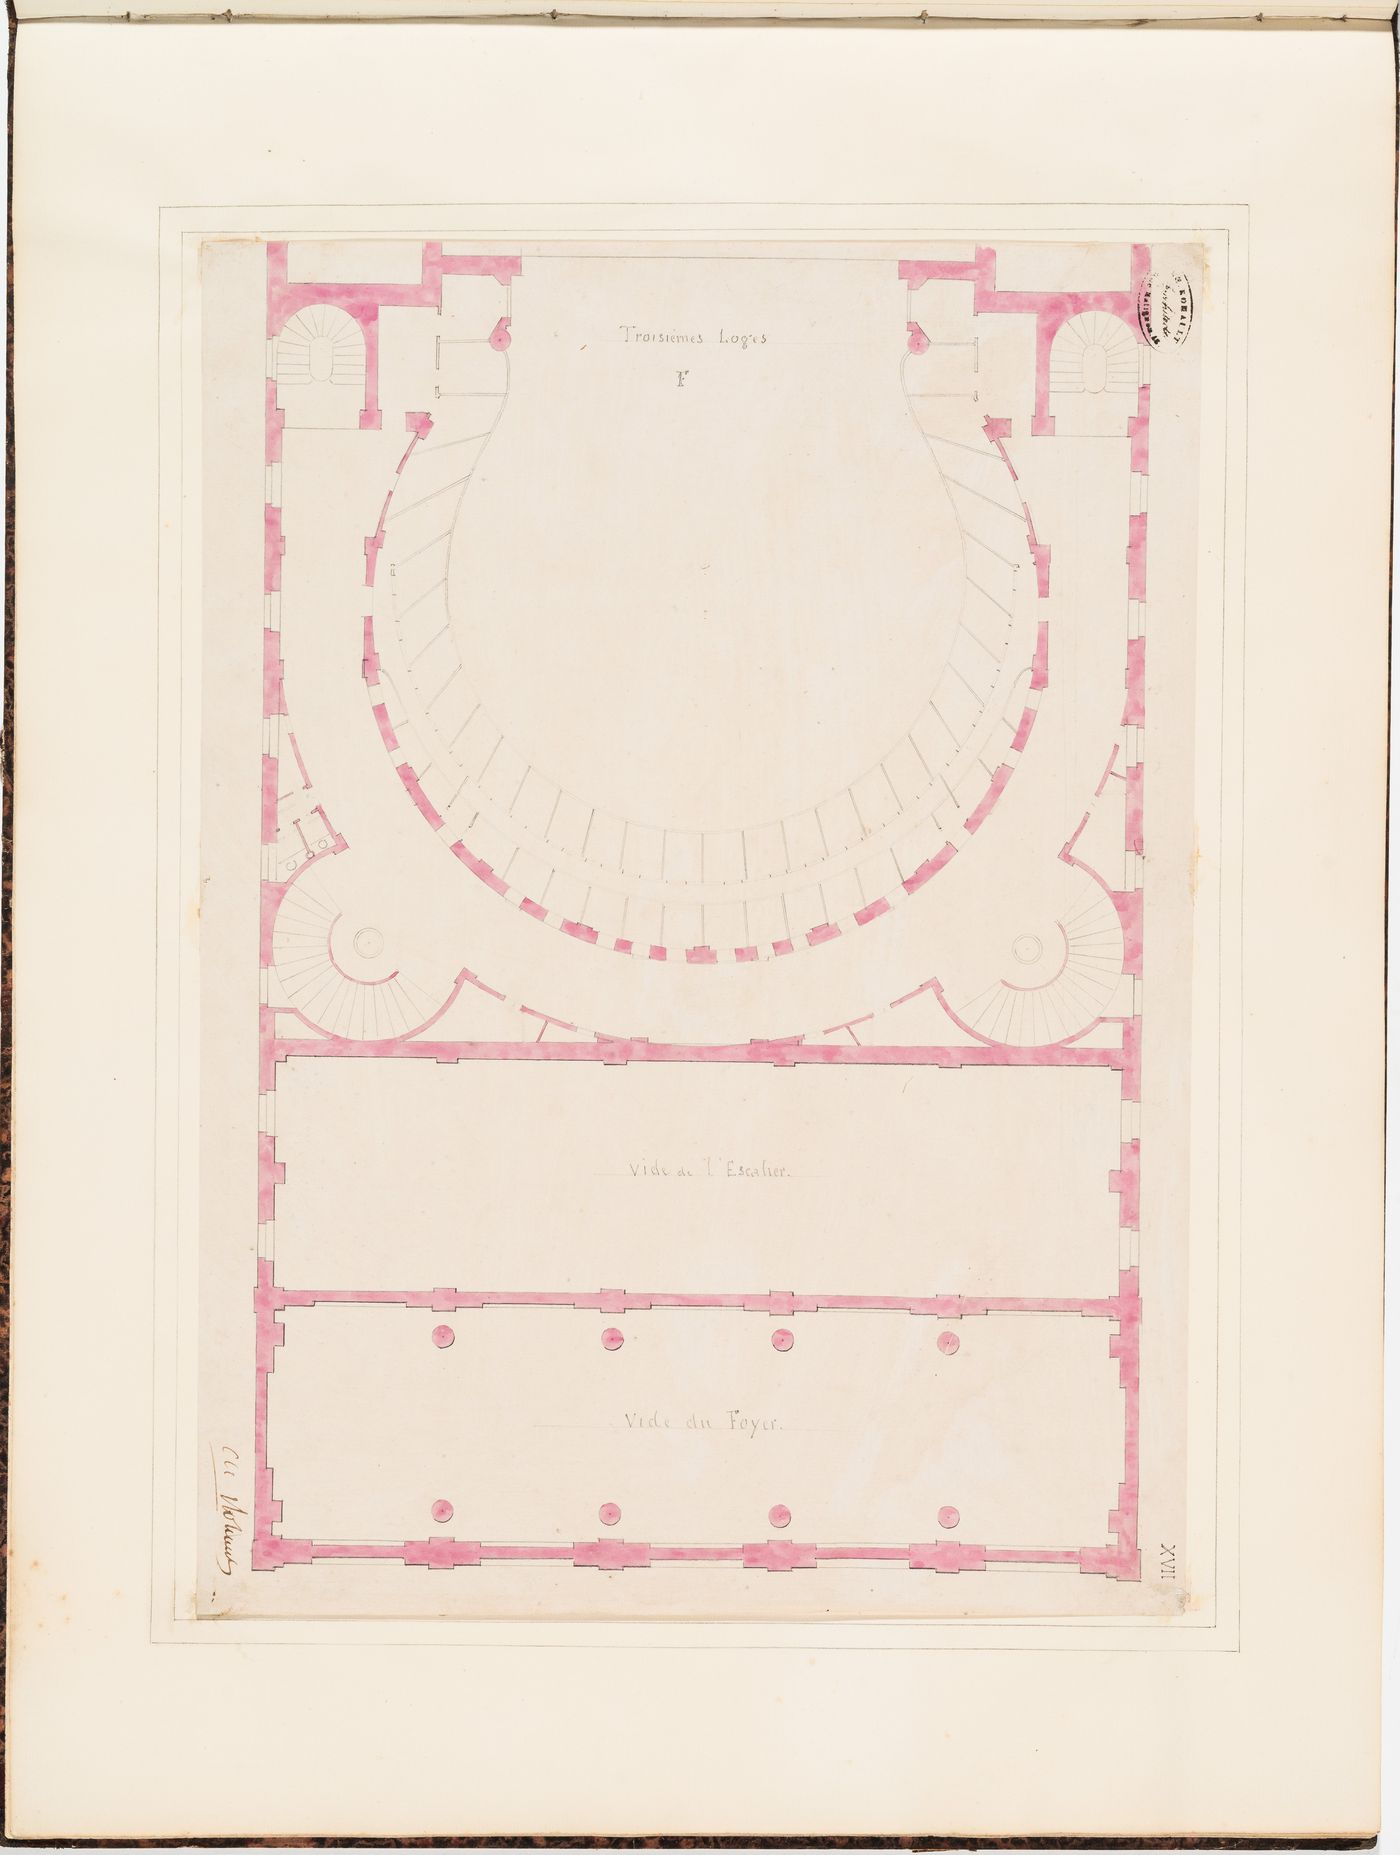 Partial plan for the "troisièmes loges", level F, of the Théâtre Royal Italien